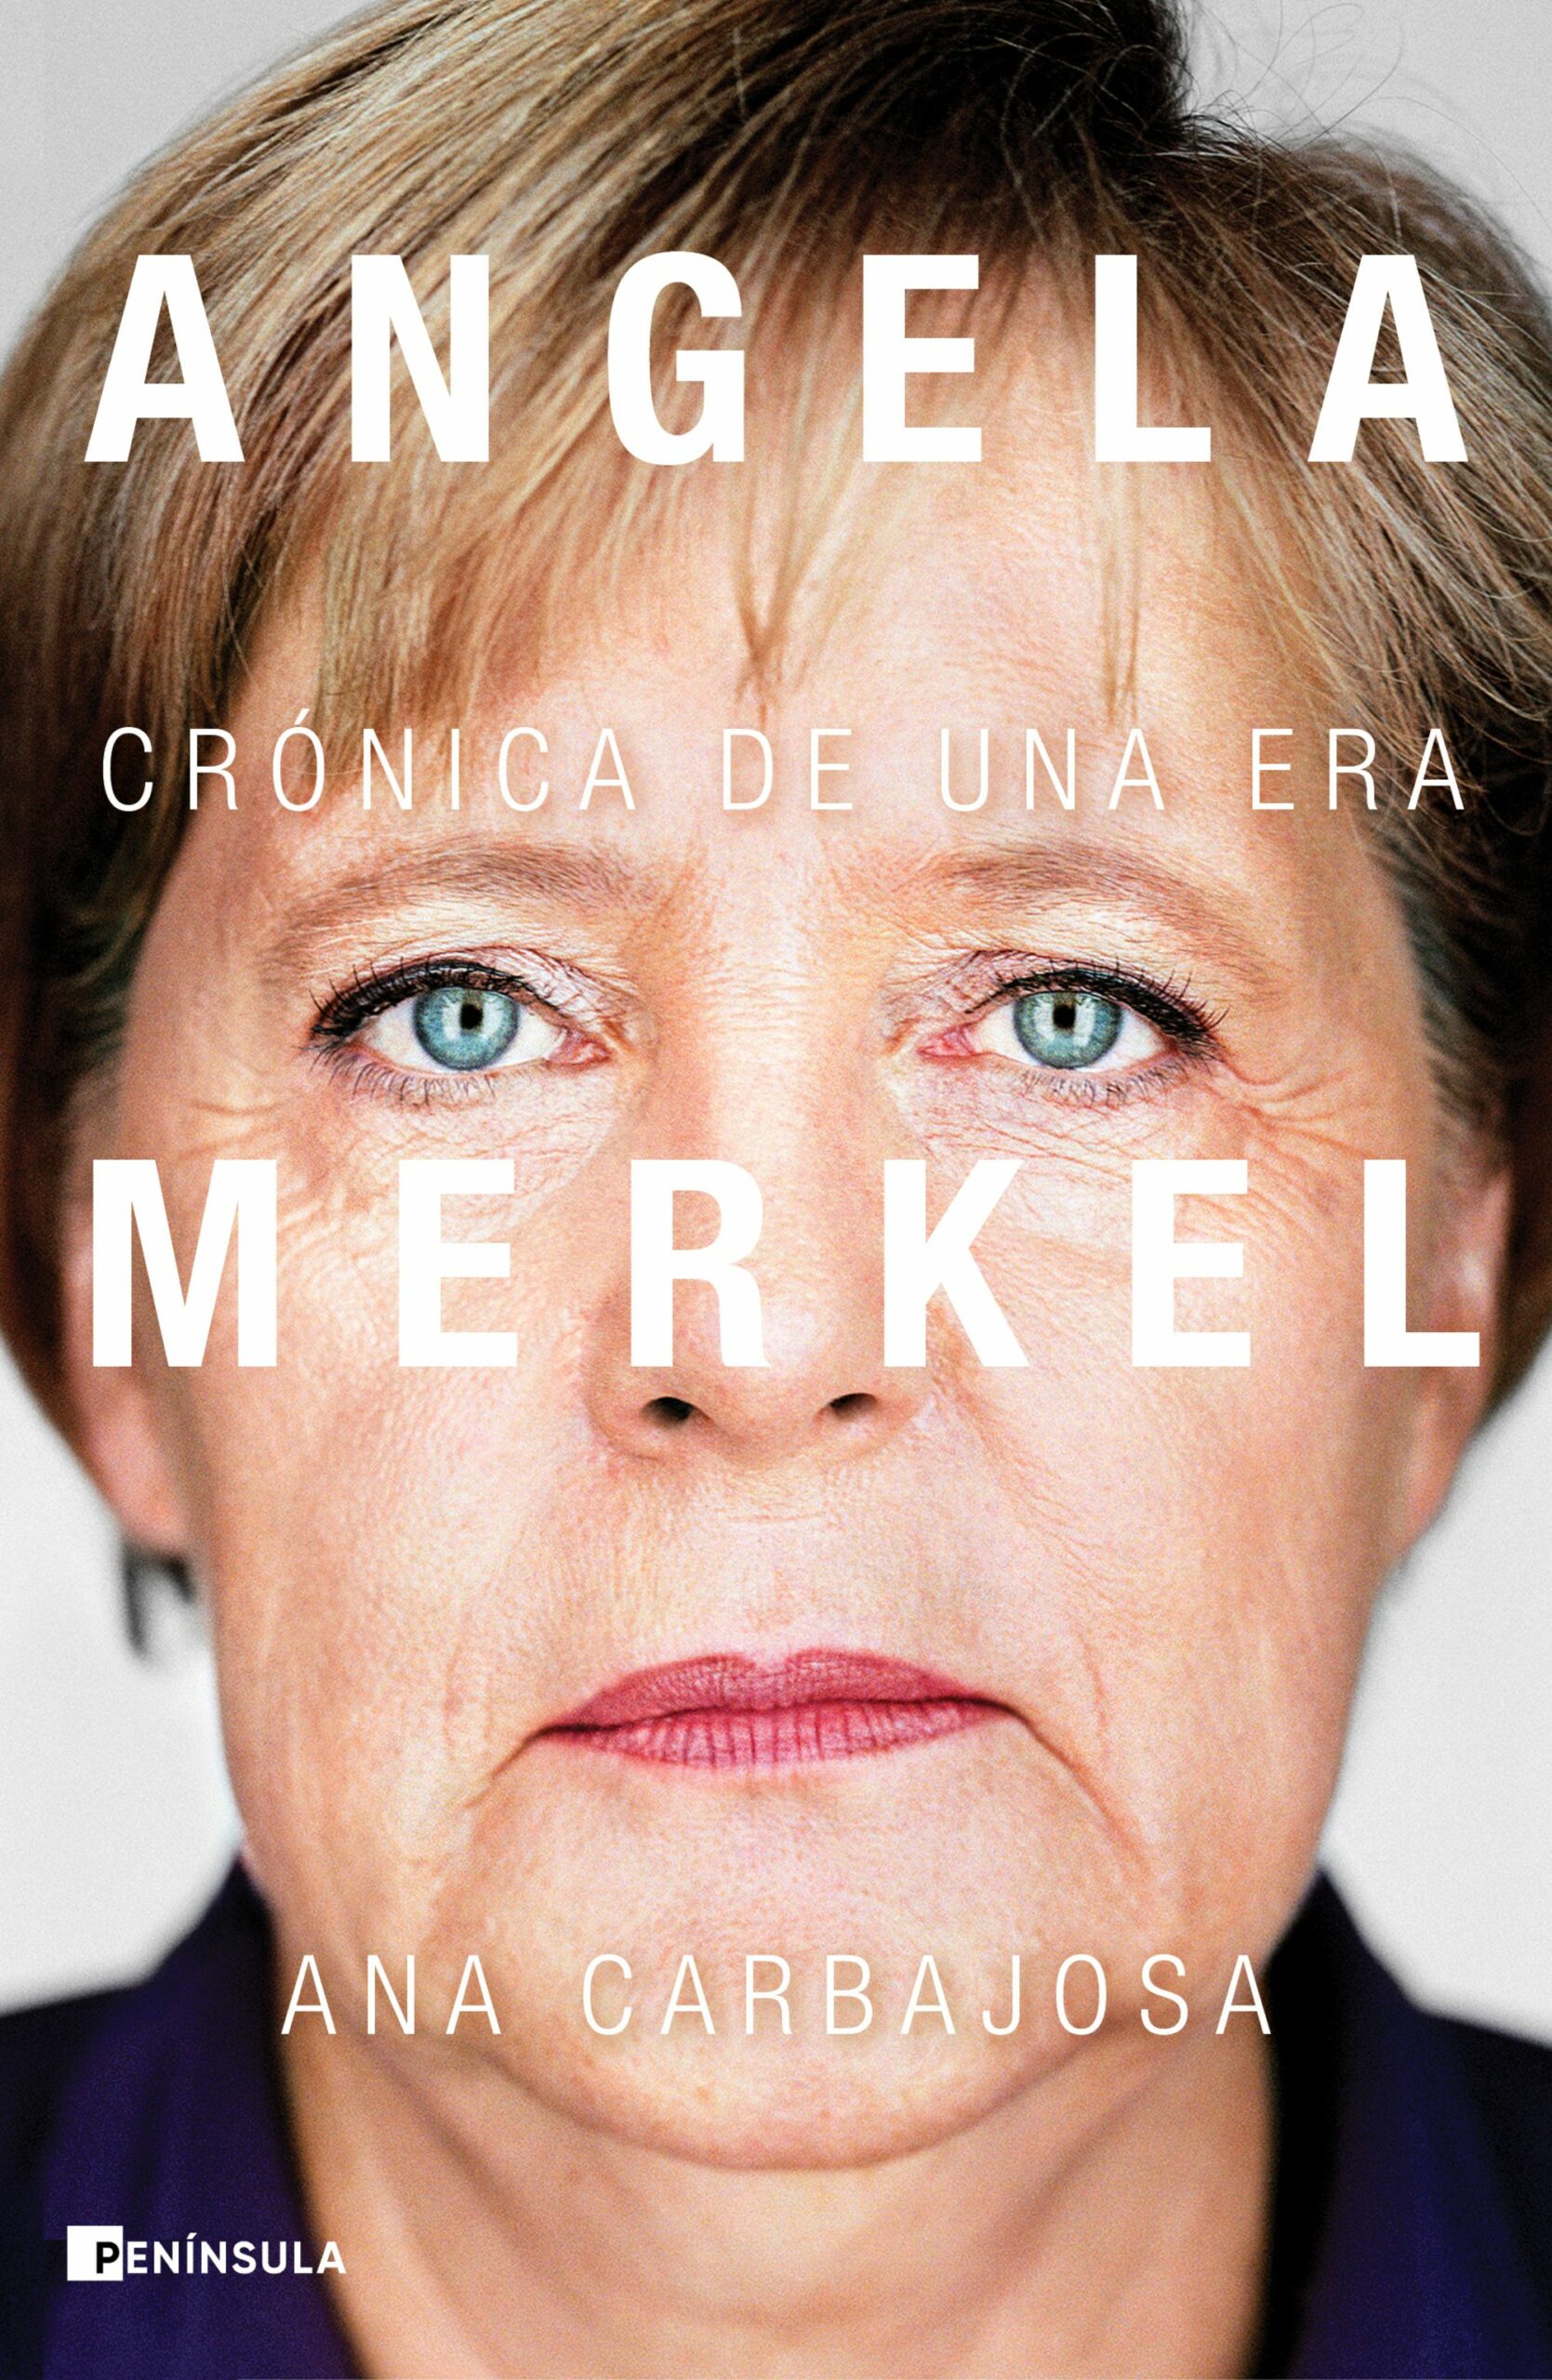 Un libro que nos adentra en la figura de Angela Merkel, probablemente la política más importante y enigmática de las últimas décadas.